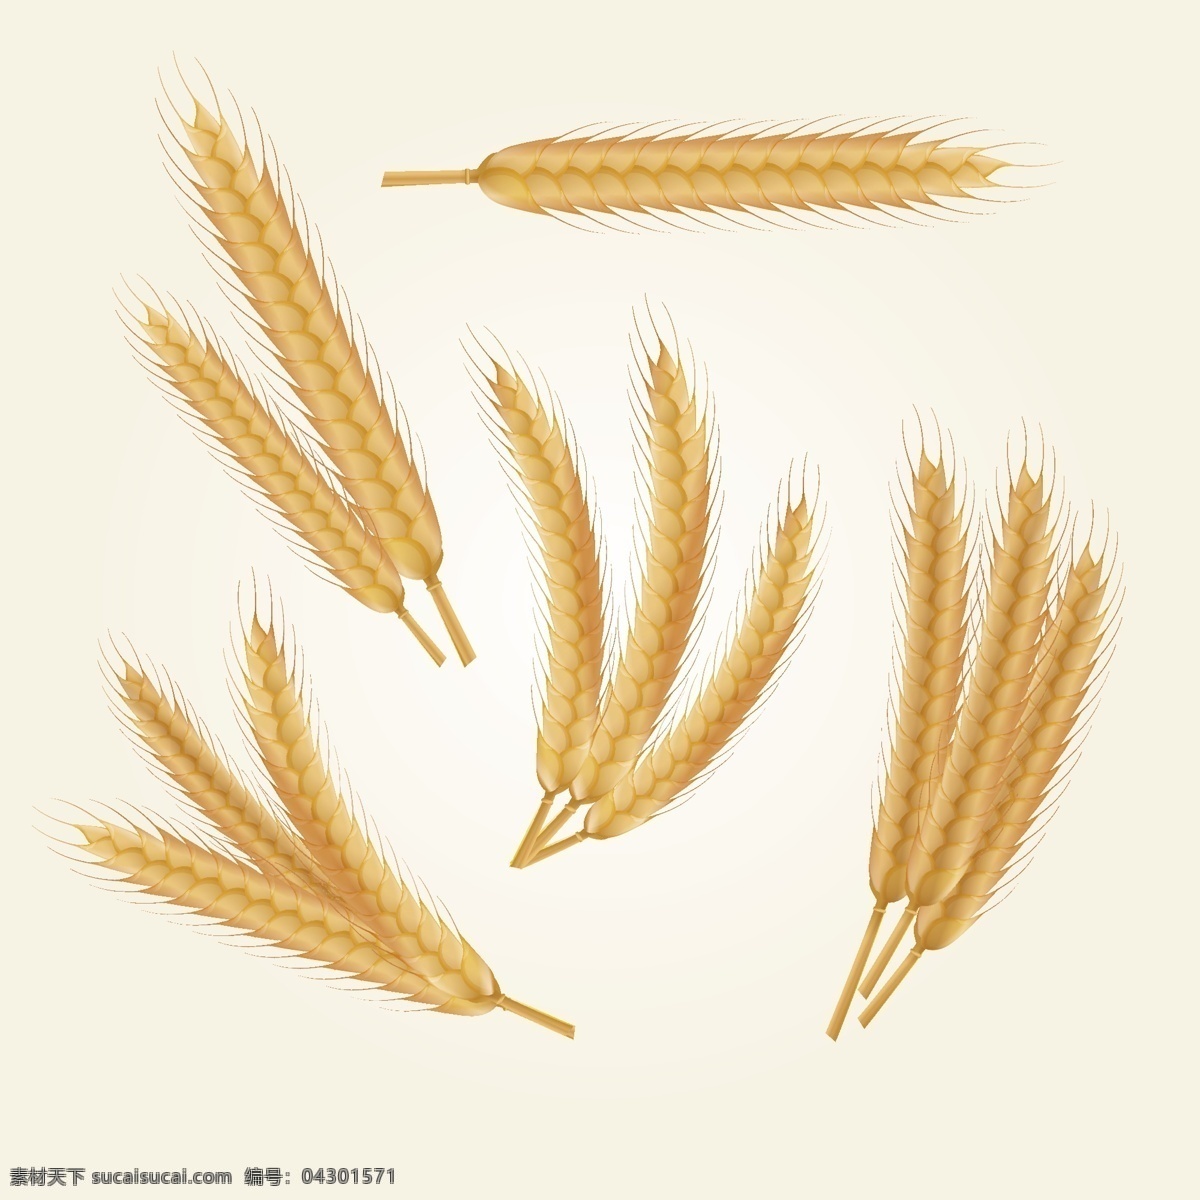 款 金色 长 小麦 插画 卡通插画 卡通 农业 简约 丰收 金色麦穗 手绘麦子 小麦合集 小麦矢量图 卡通小麦合集 稻穗 成熟的麦穗 饱满 谷物 设计元素 五谷